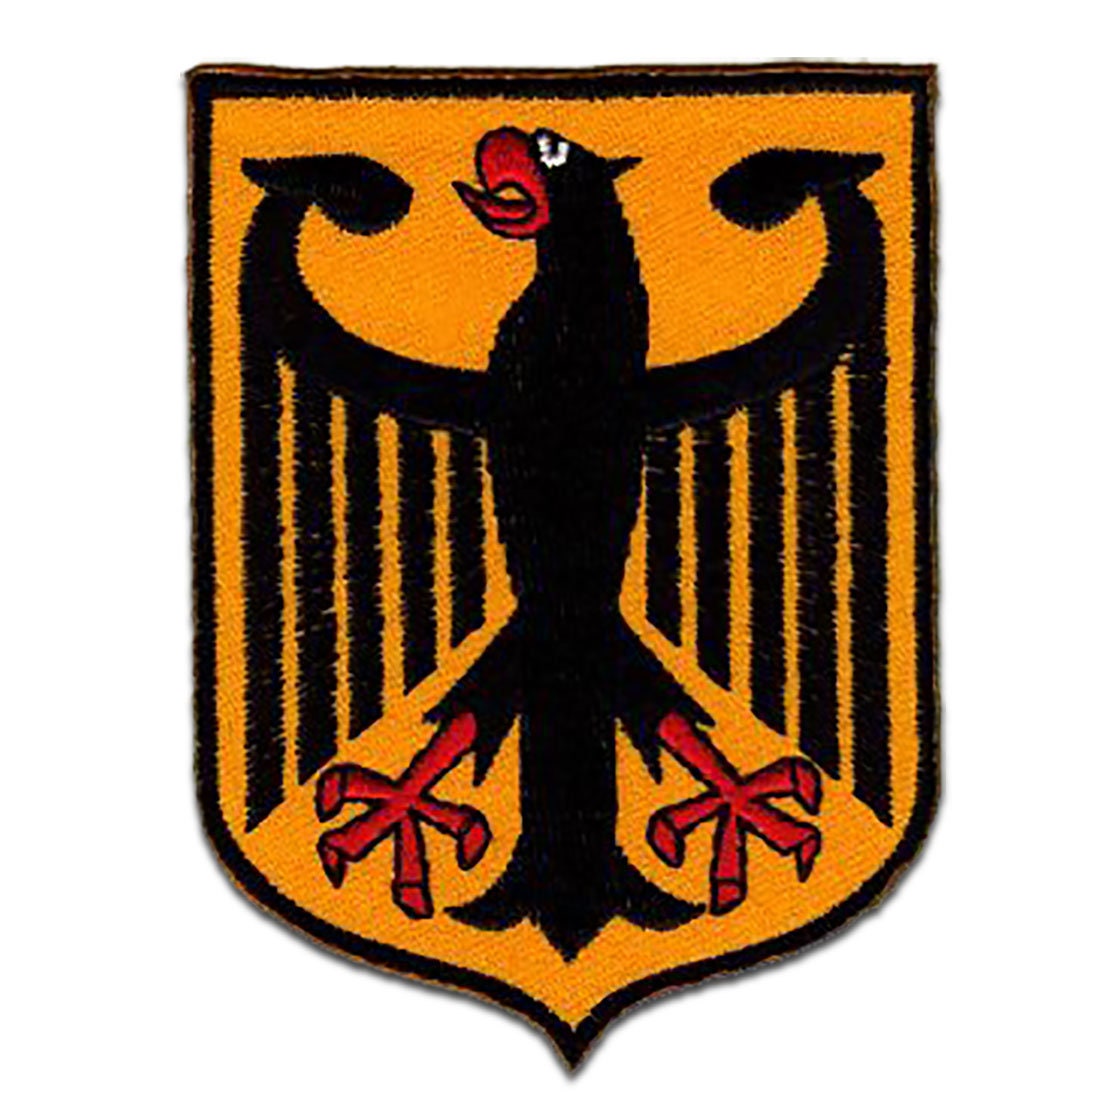 Deutschland Aufkleber - Deutsche Flagge 7 x 10 cm, 5 Sticker